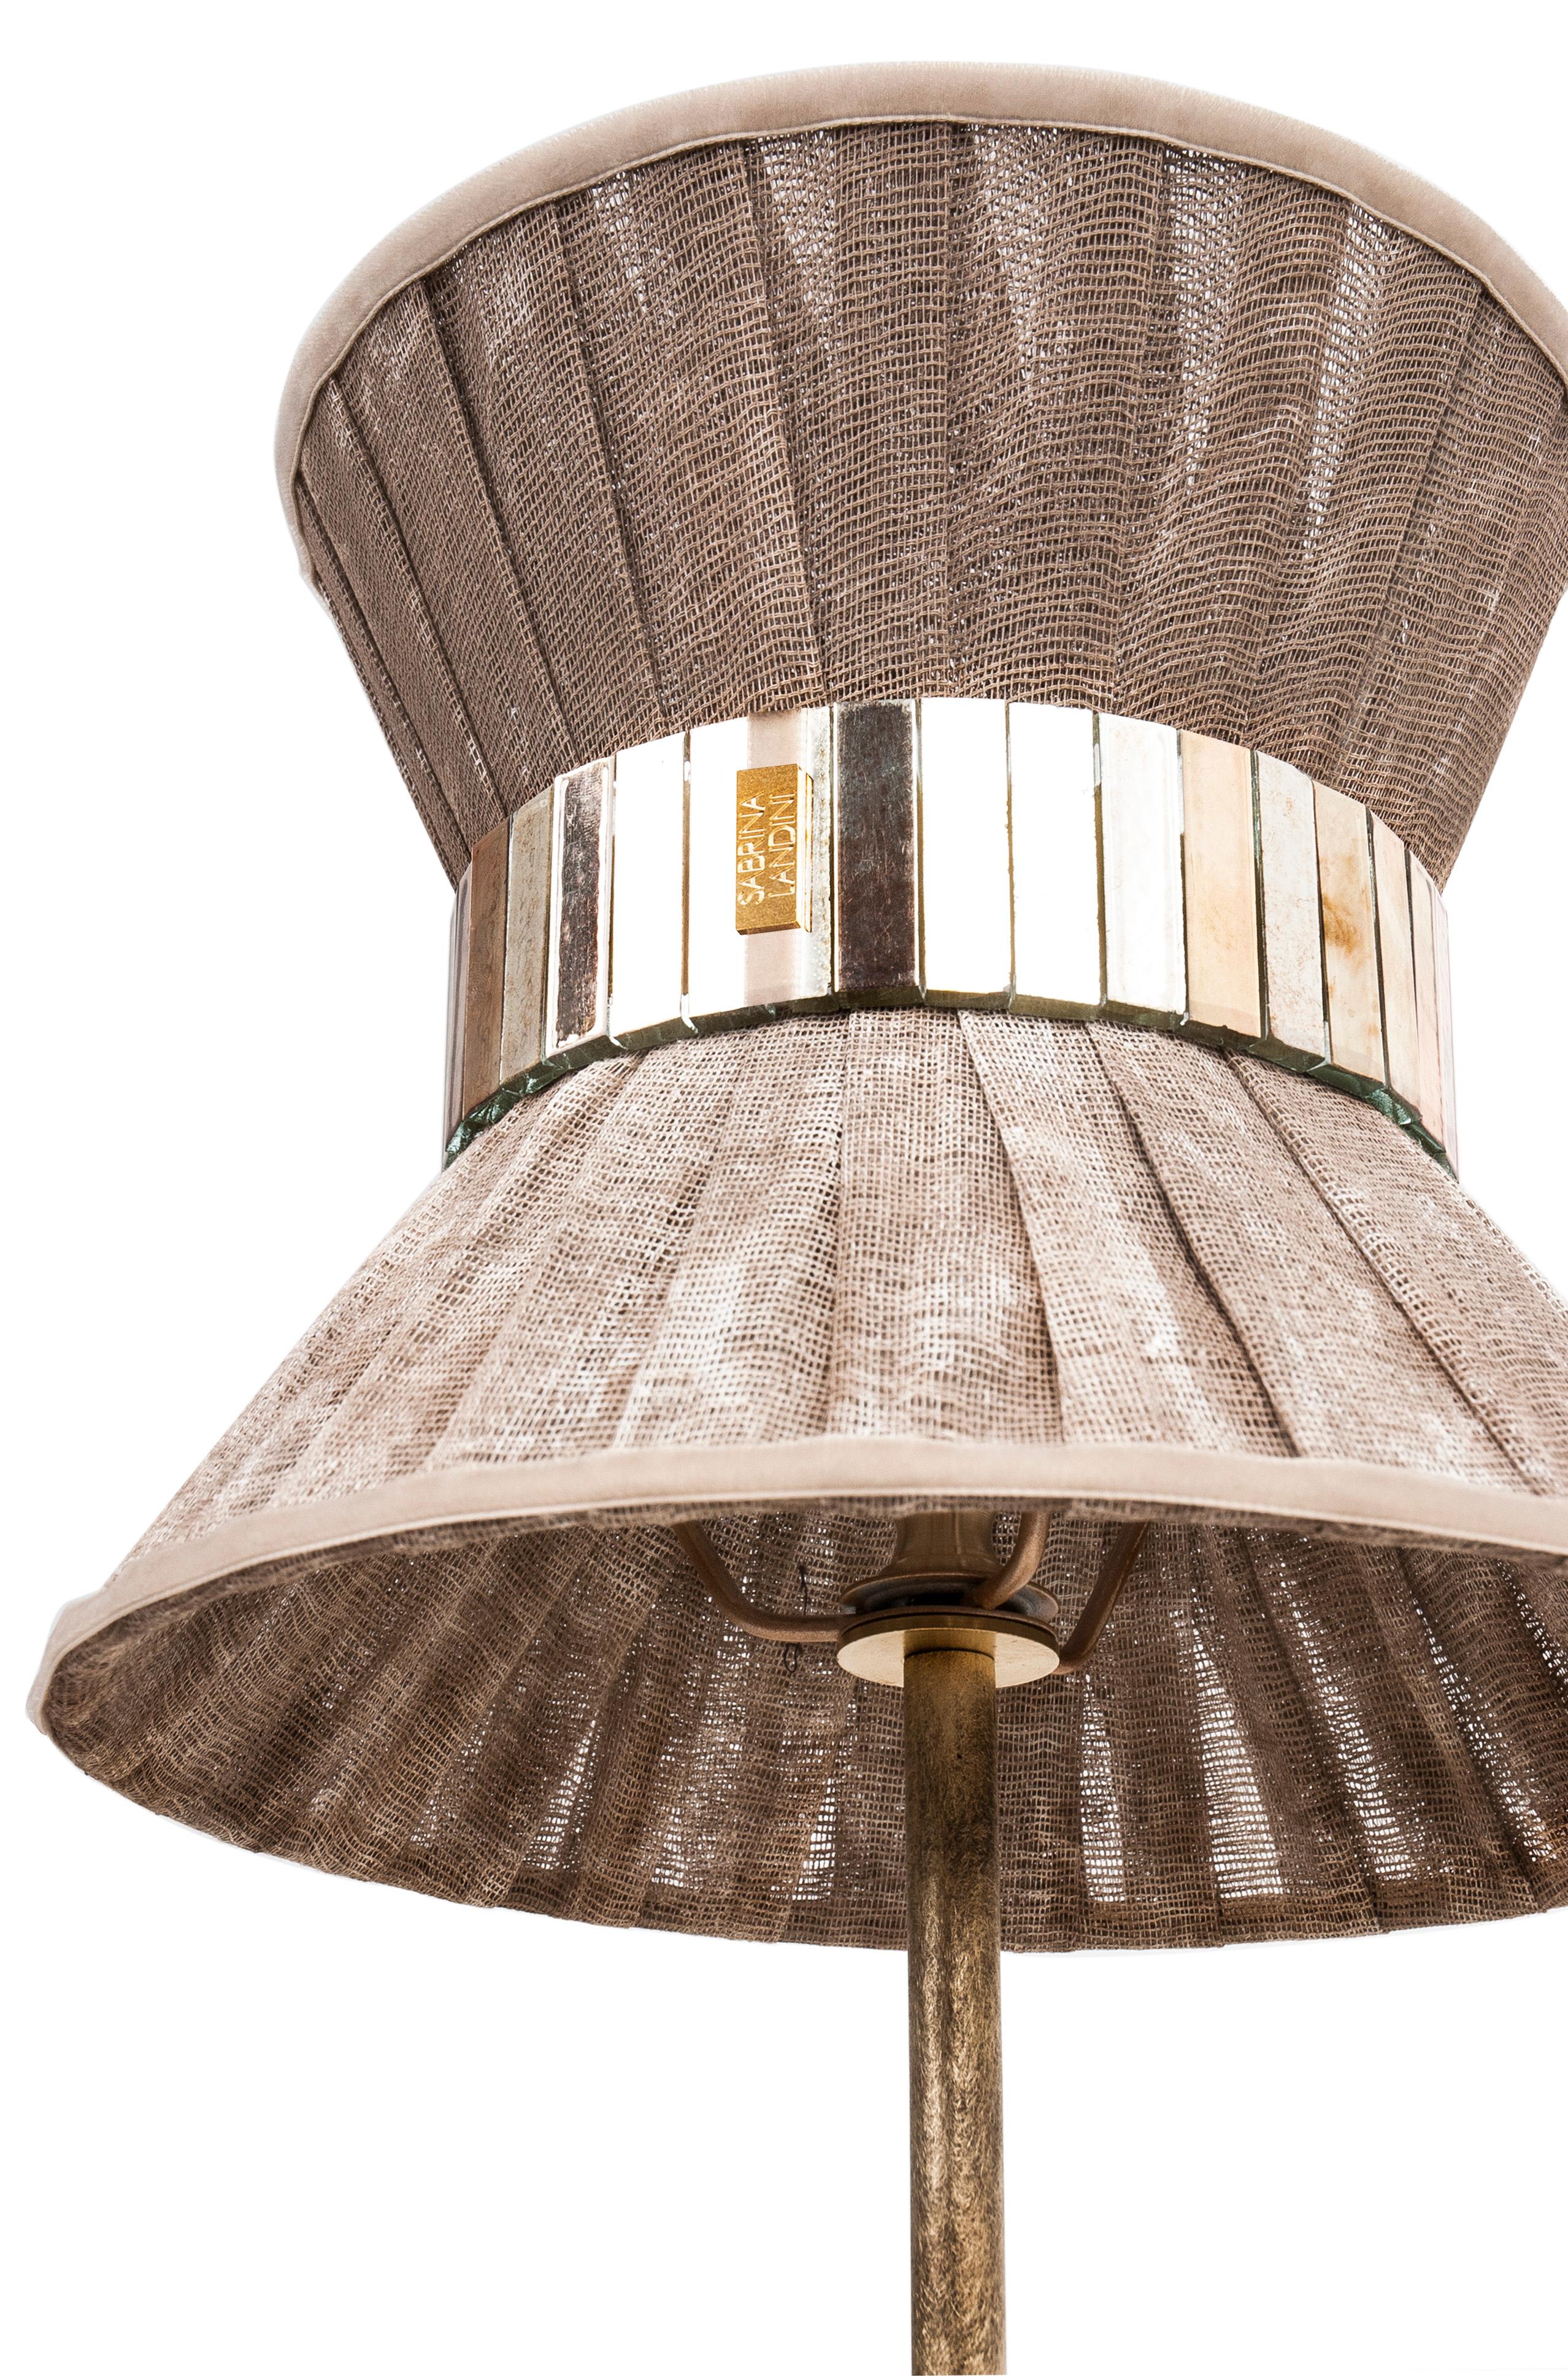 TIFFANY die kultige Lampe!

Tiffany, eine zeitlose Lampe, inspiriert durch den internationalen Film 